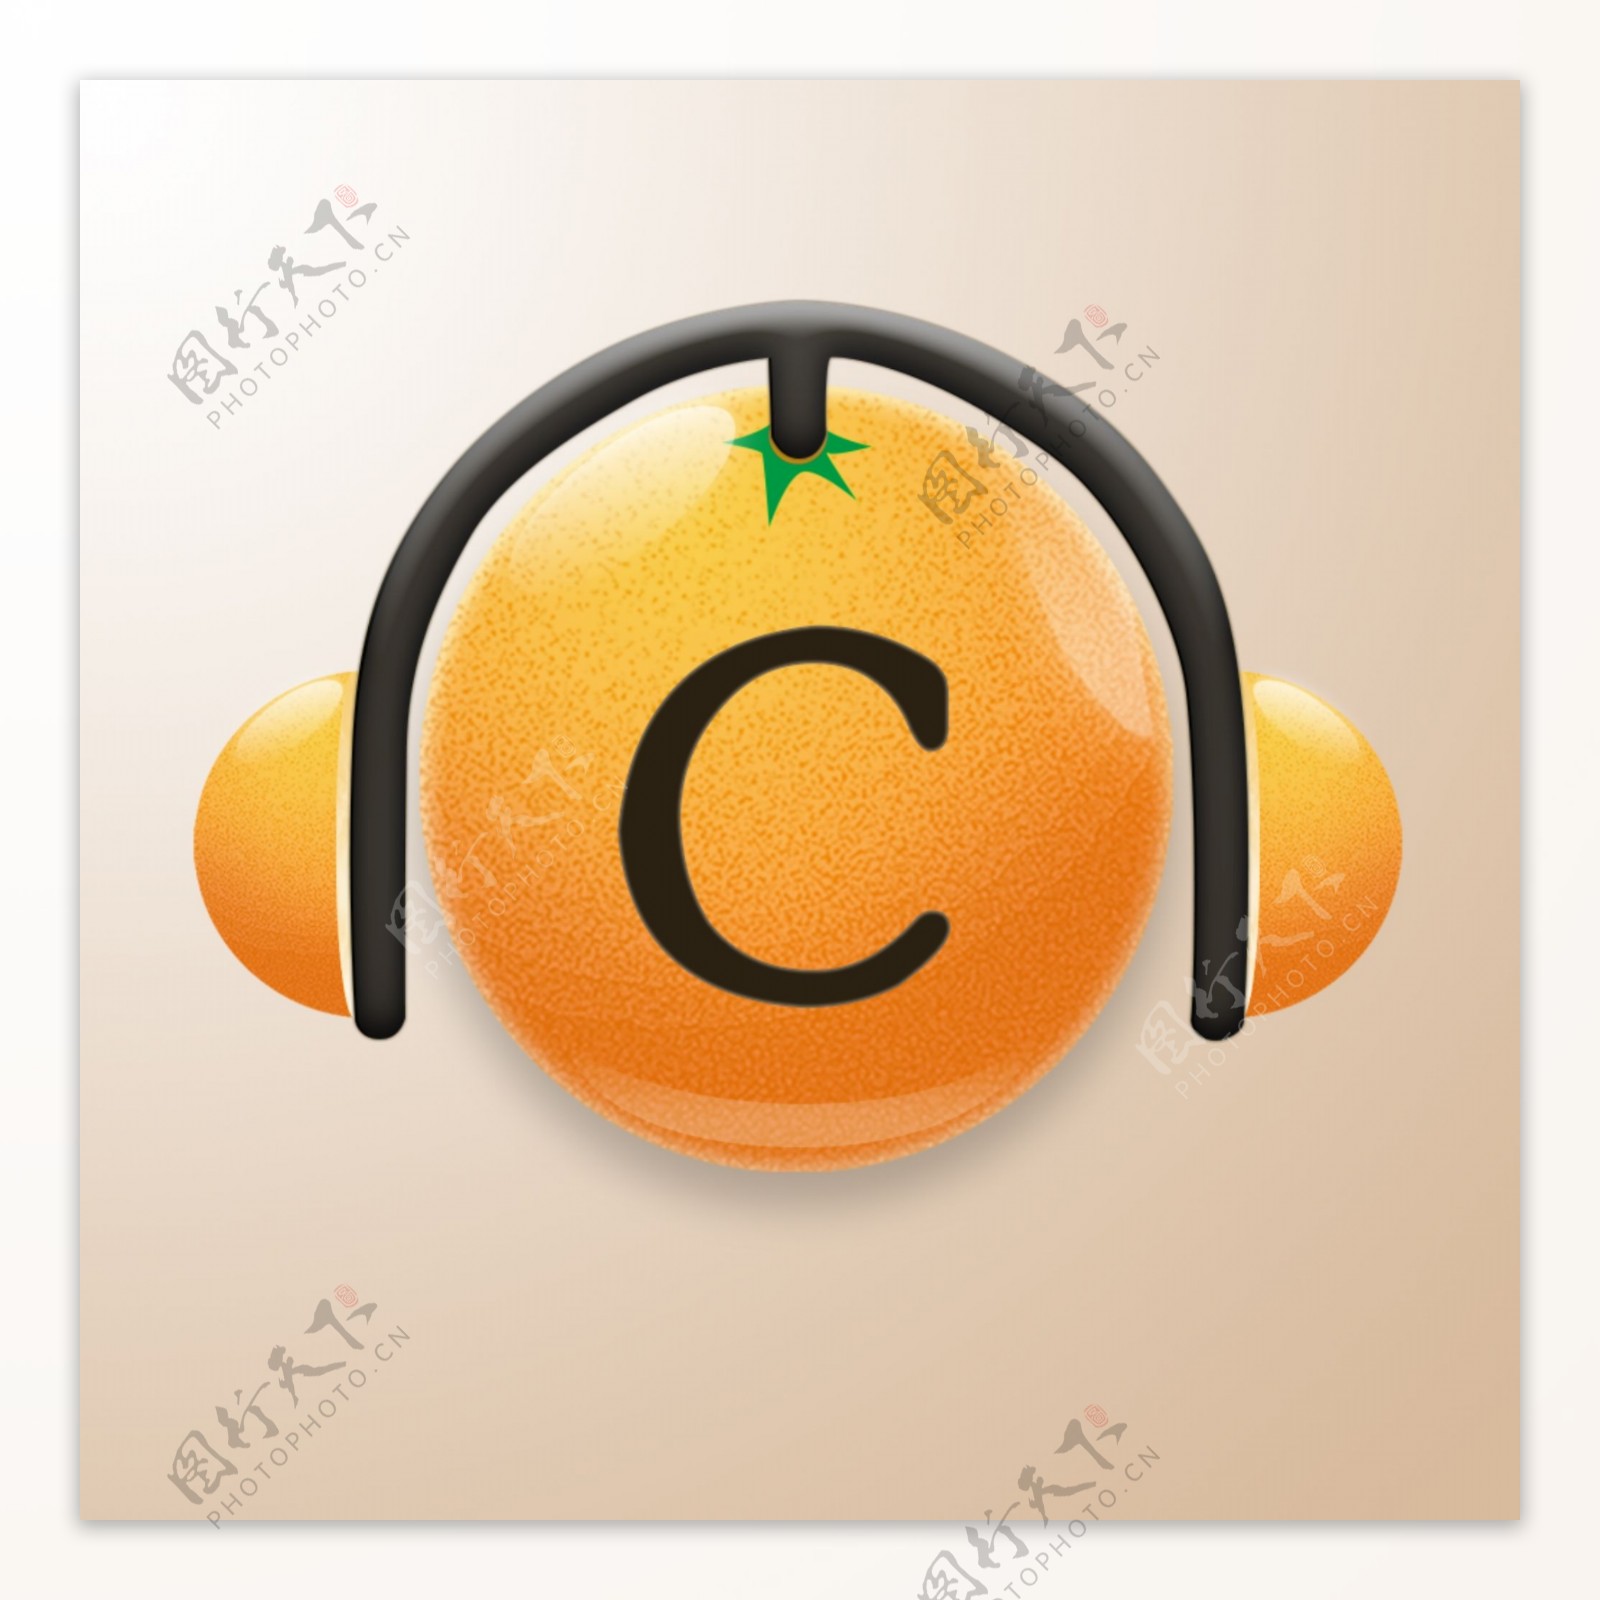 蹭歌音乐软件图标拟物橙色时尚